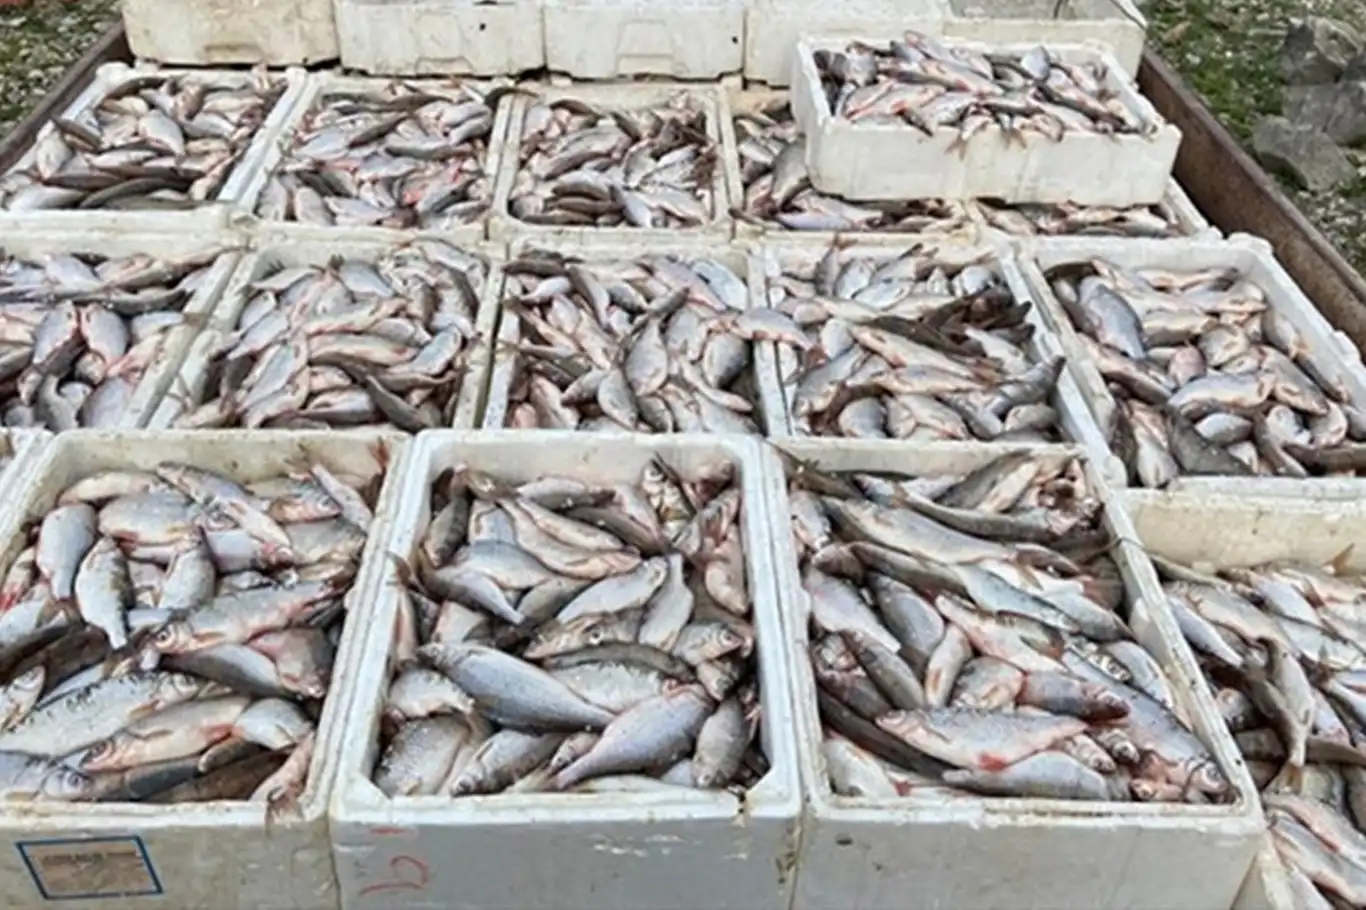 Kaçak balık avına yaklaşık 200 bin TL ceza